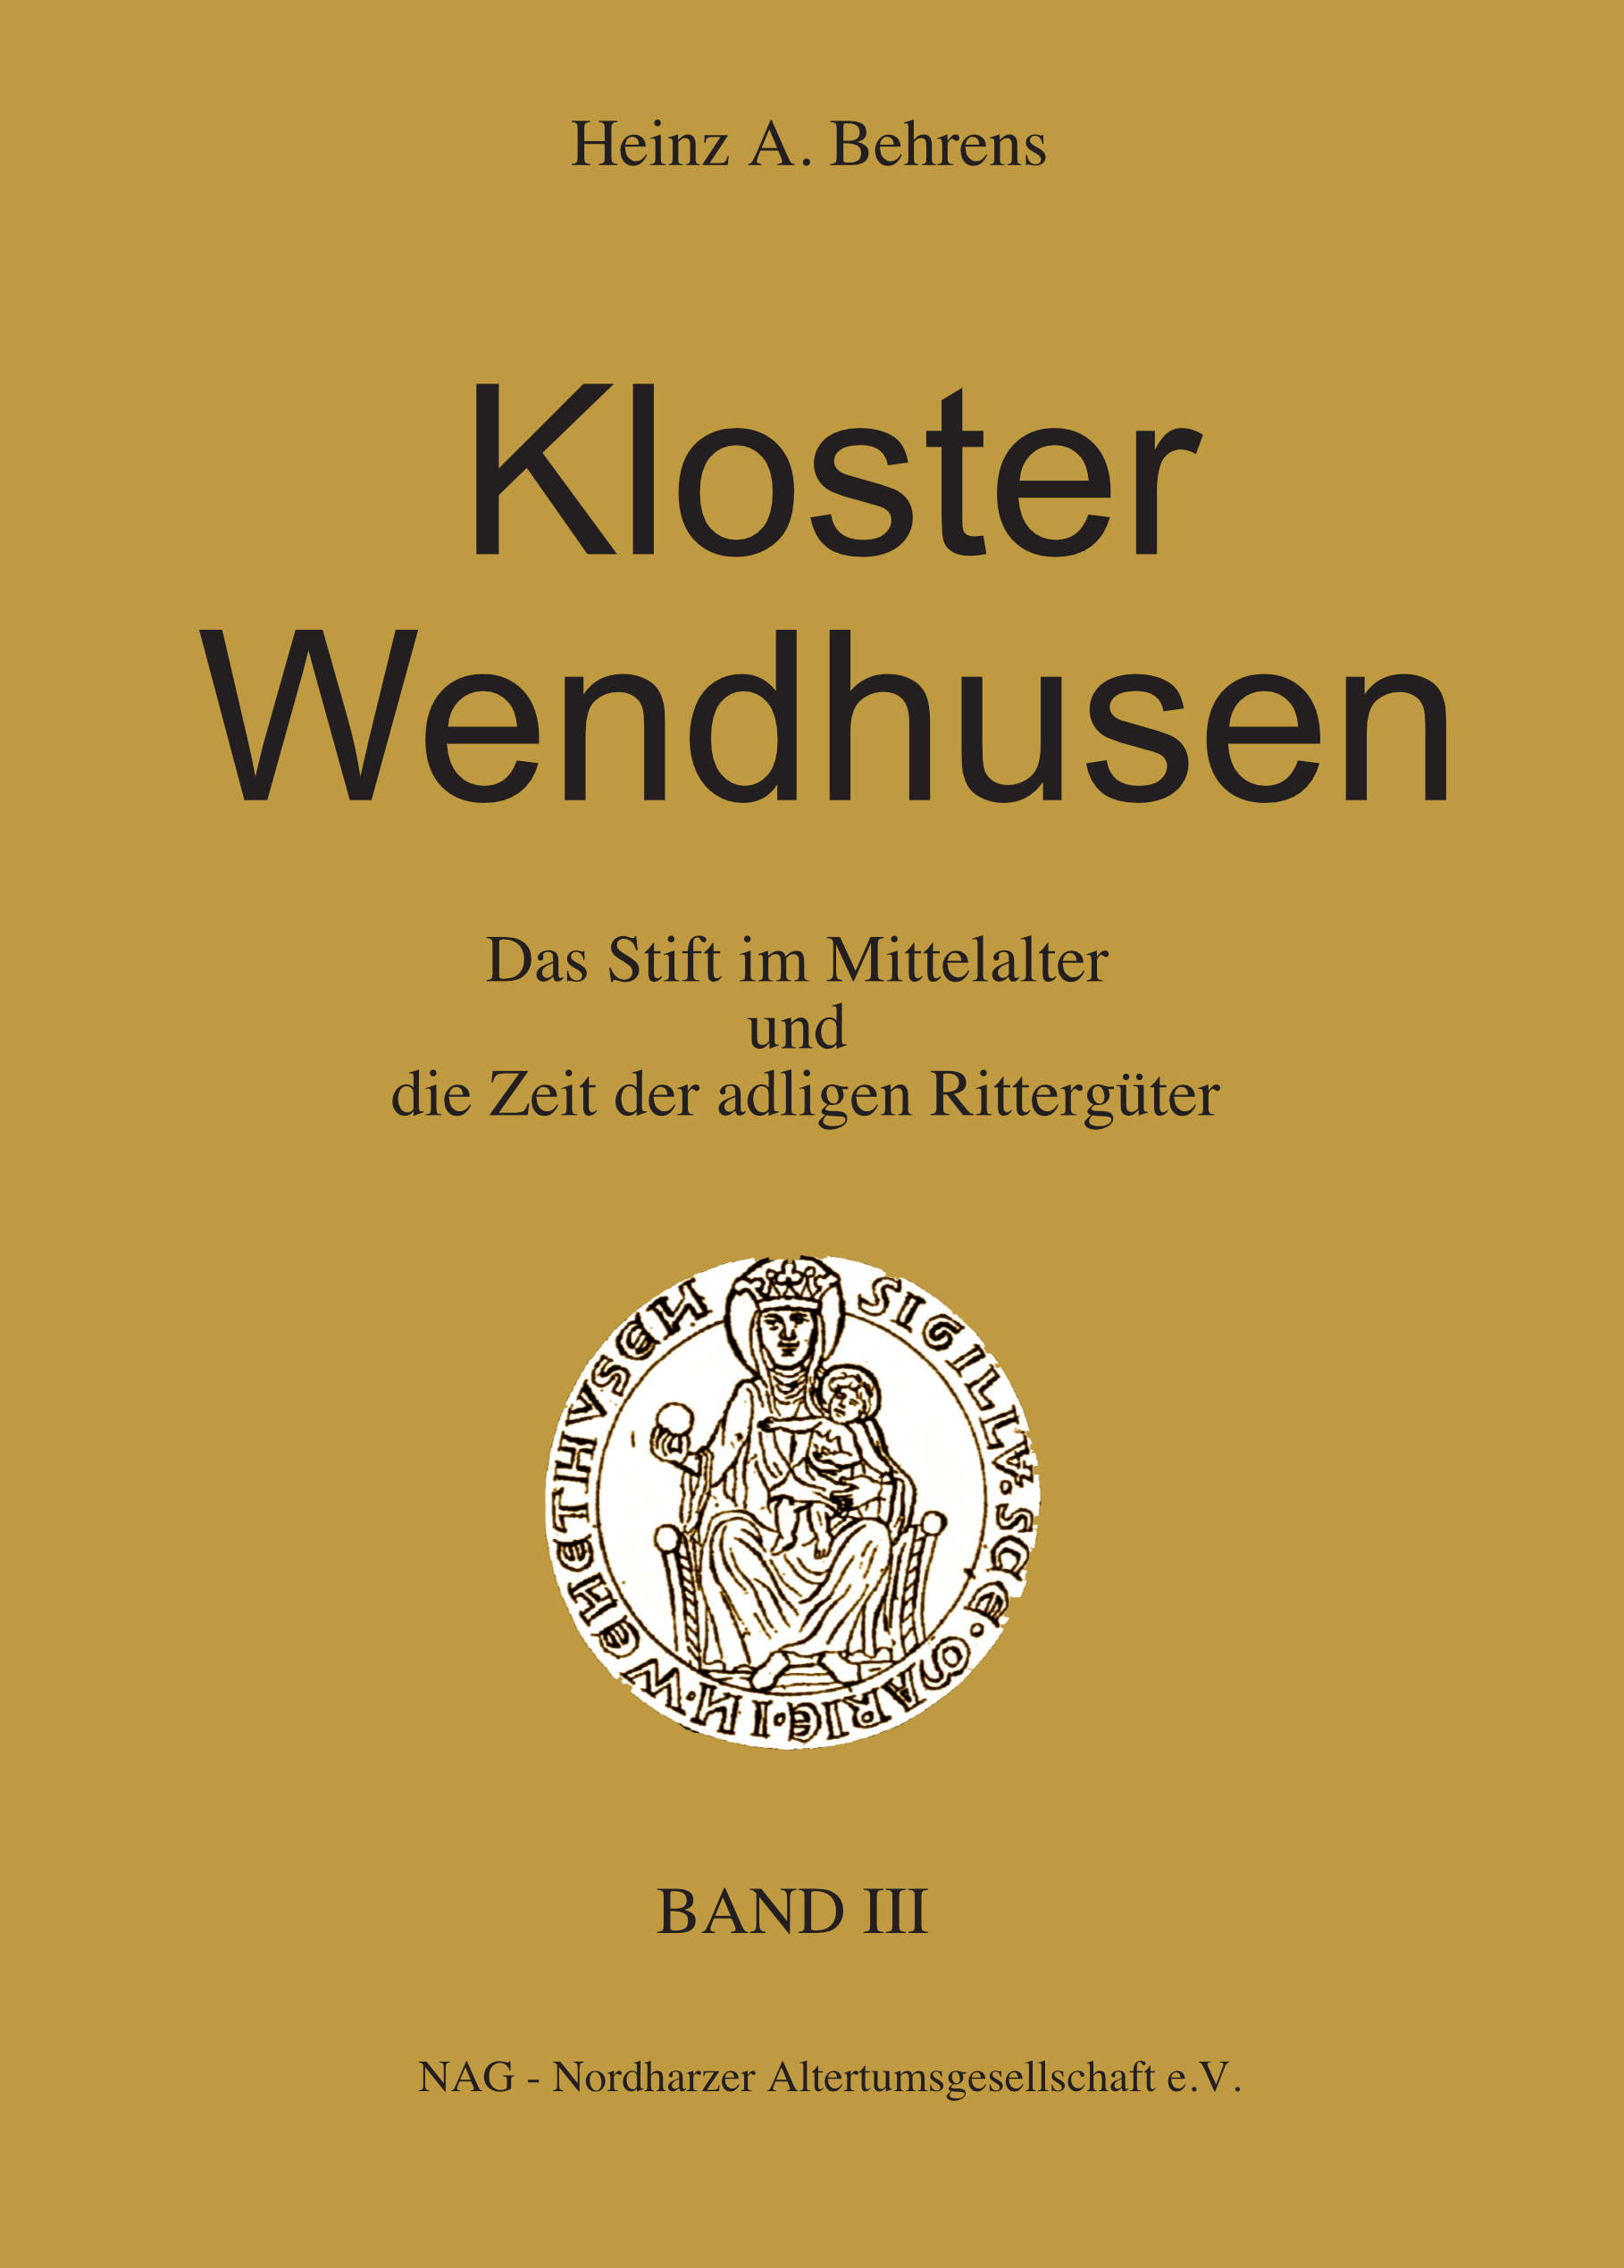 KLOSTER WENDHUSEN BAND III